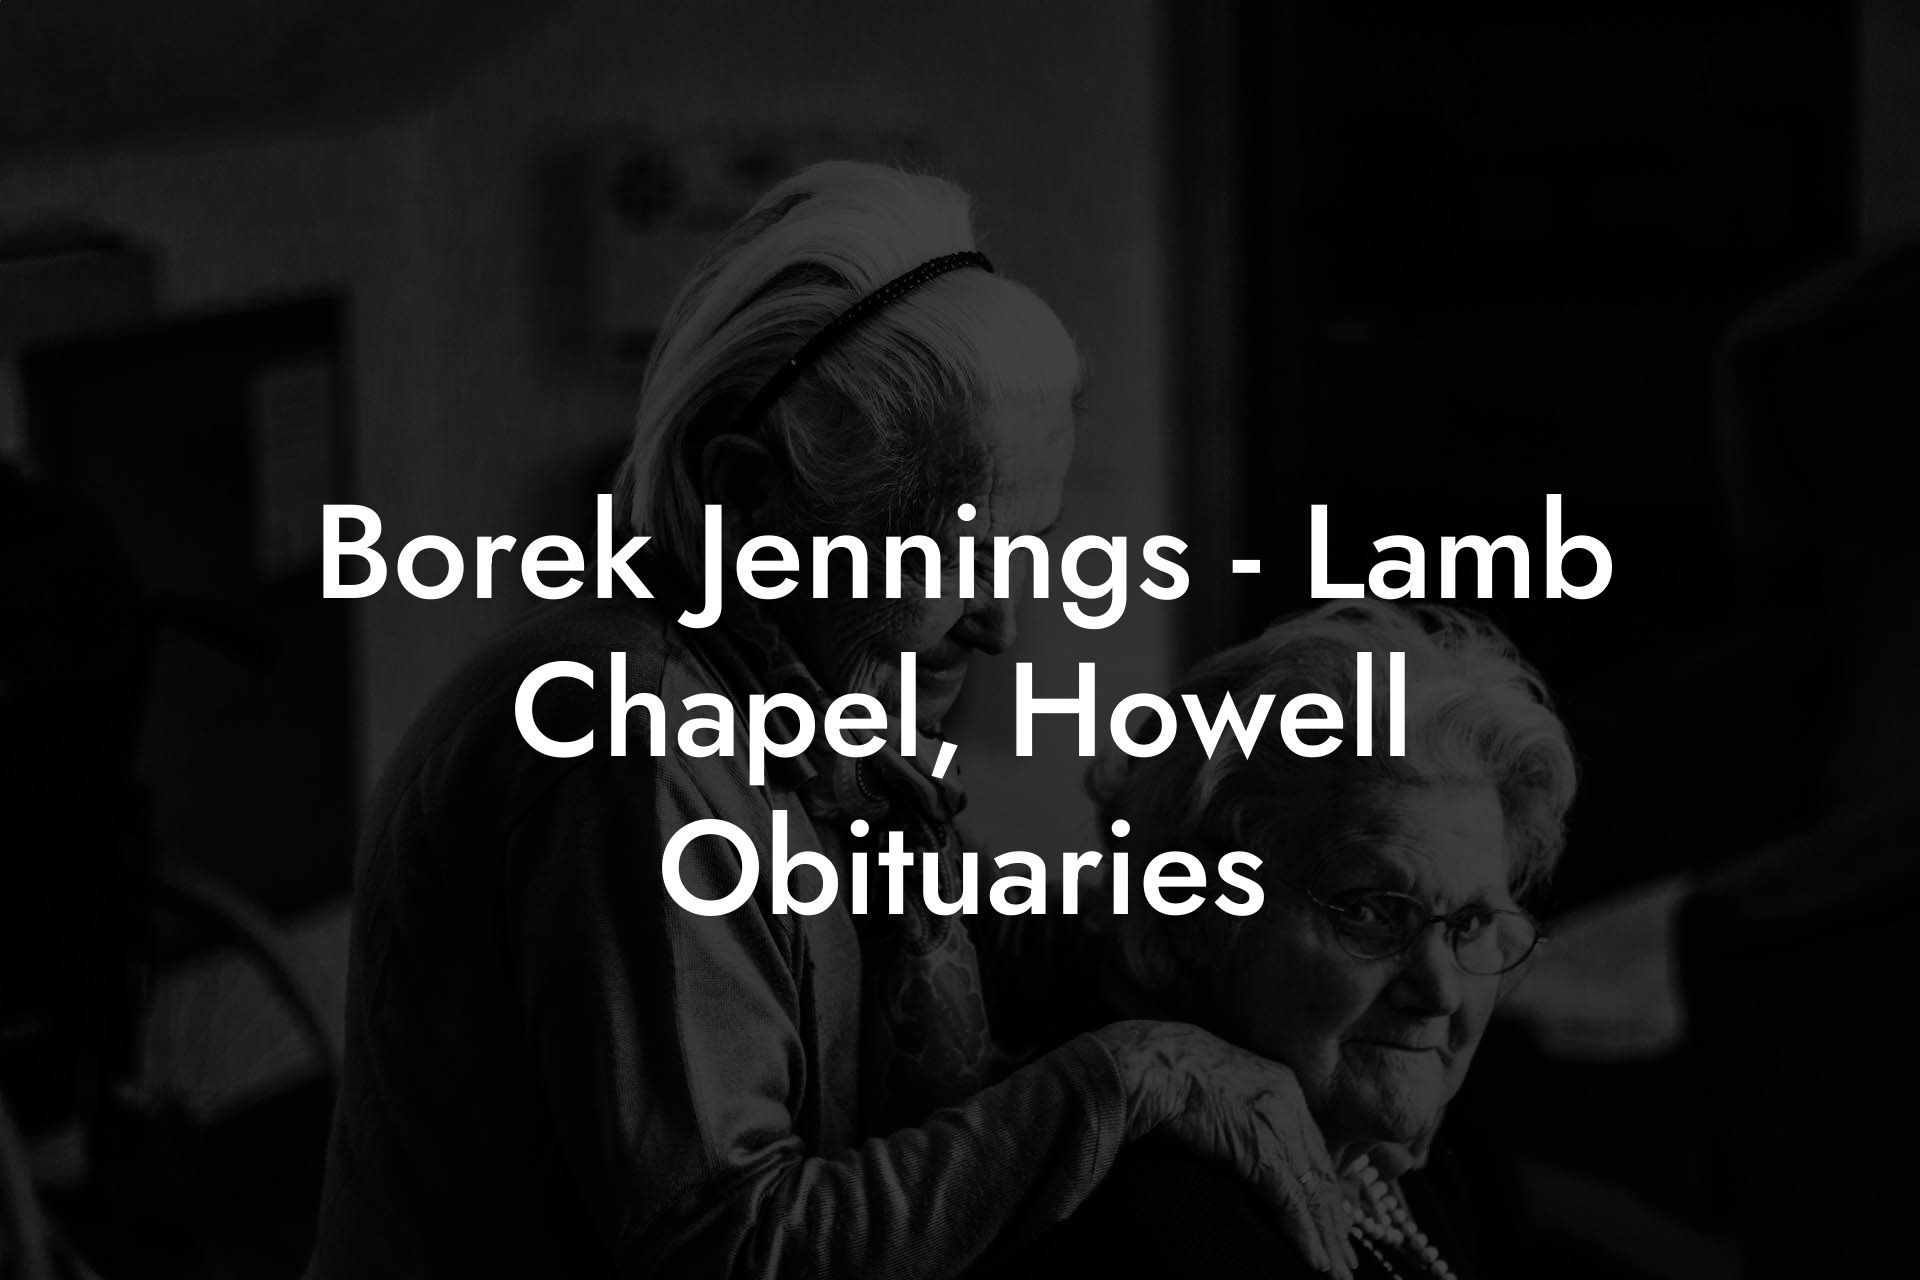 Borek Jennings - Lamb Chapel, Howell Obituaries